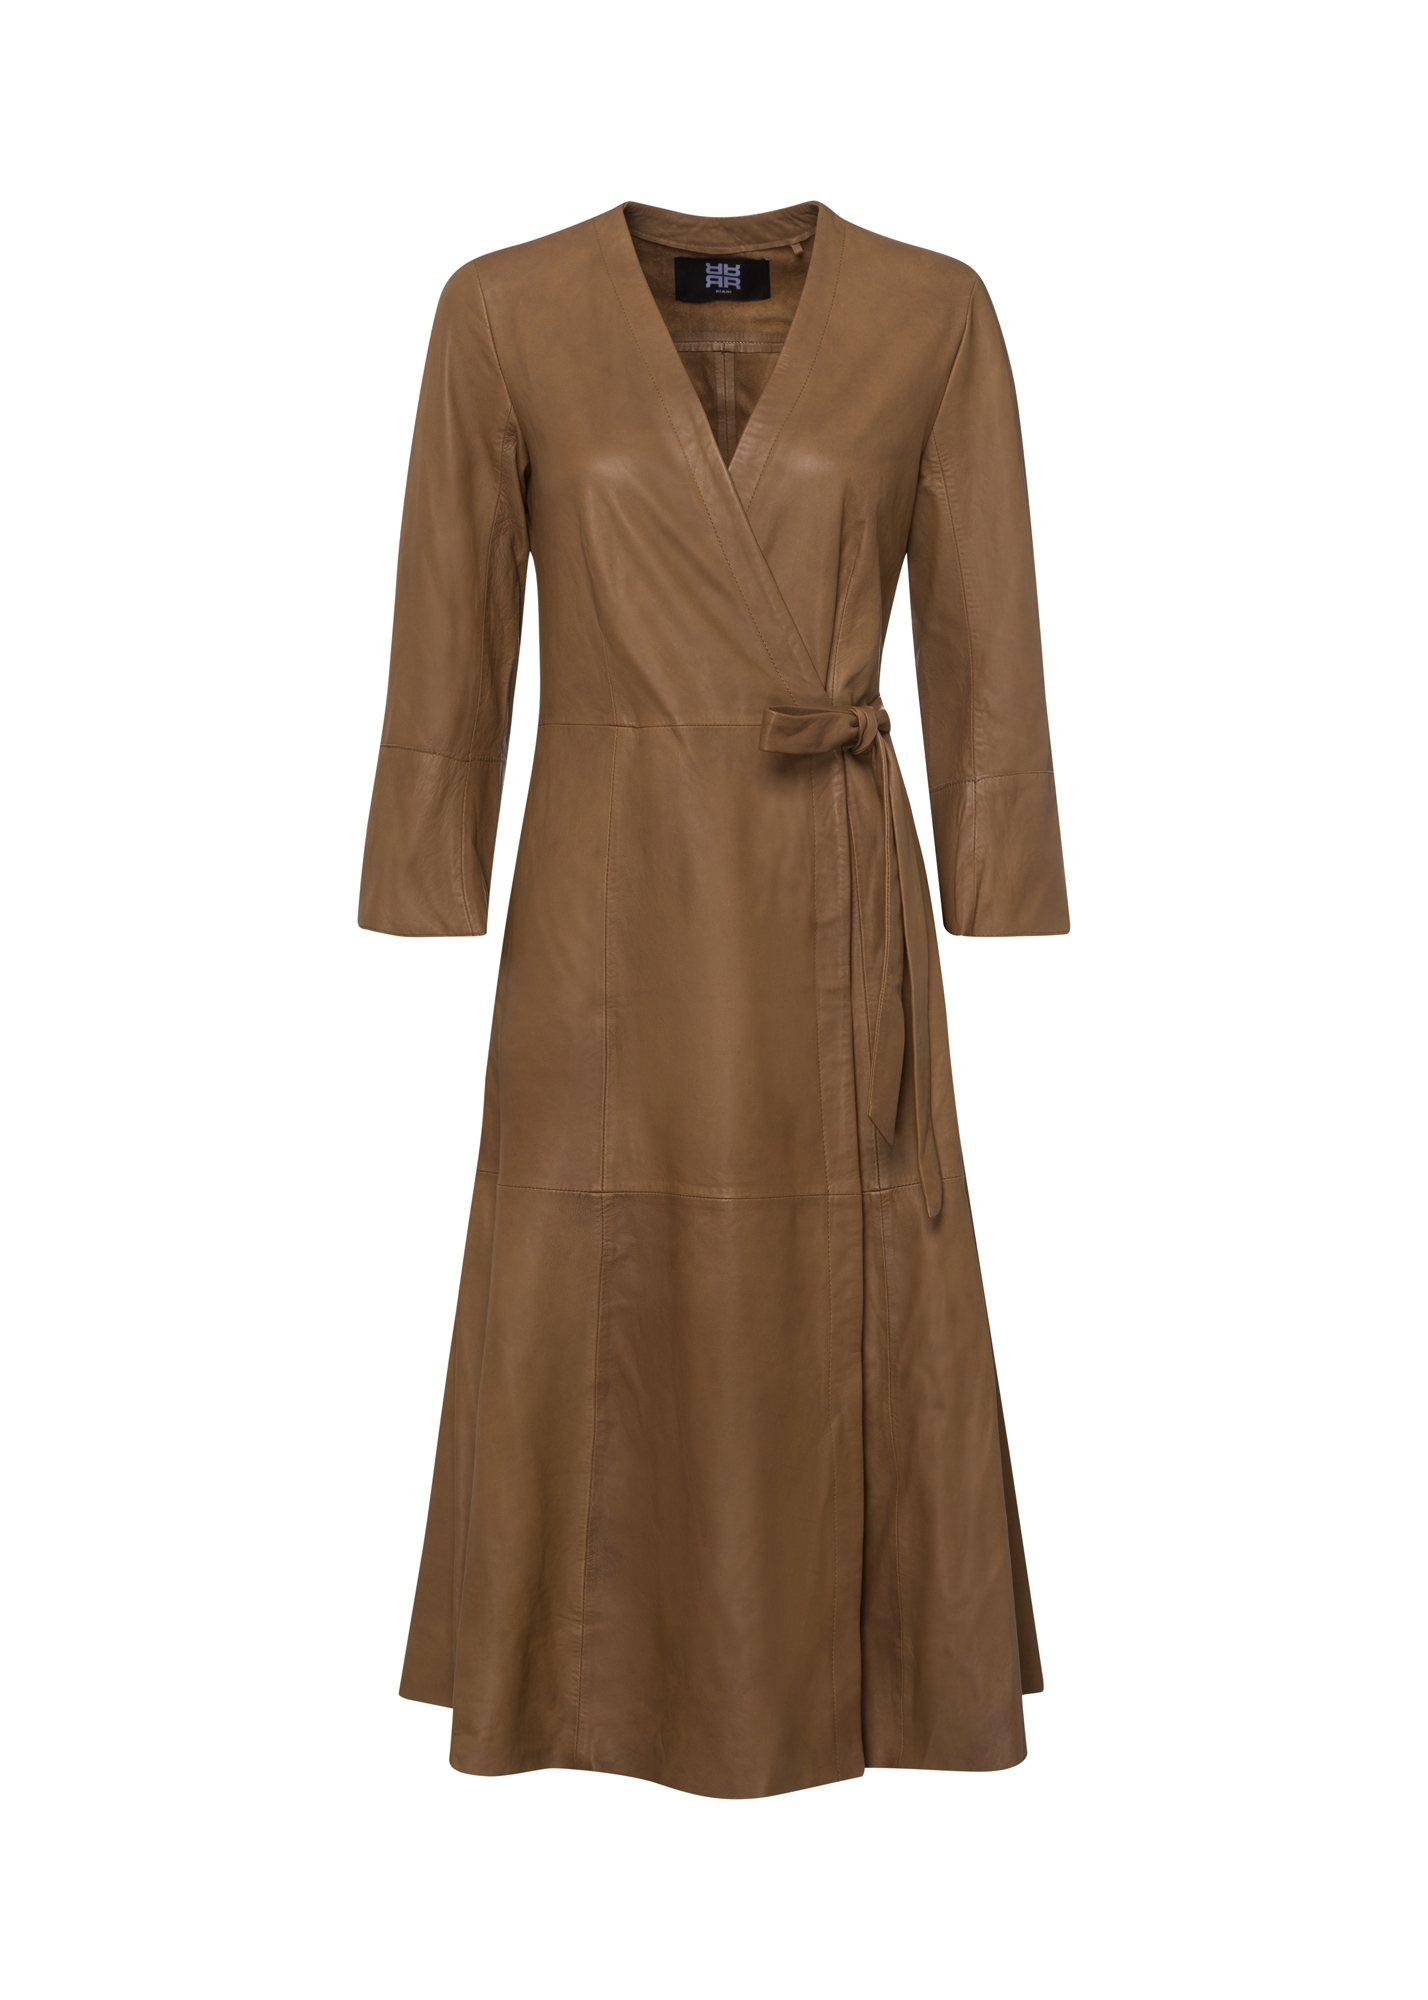 Sukienka skórzana ,długa, pasowana w talii, wiązana z boku, kolor brązowy Riani 136010-9027-610